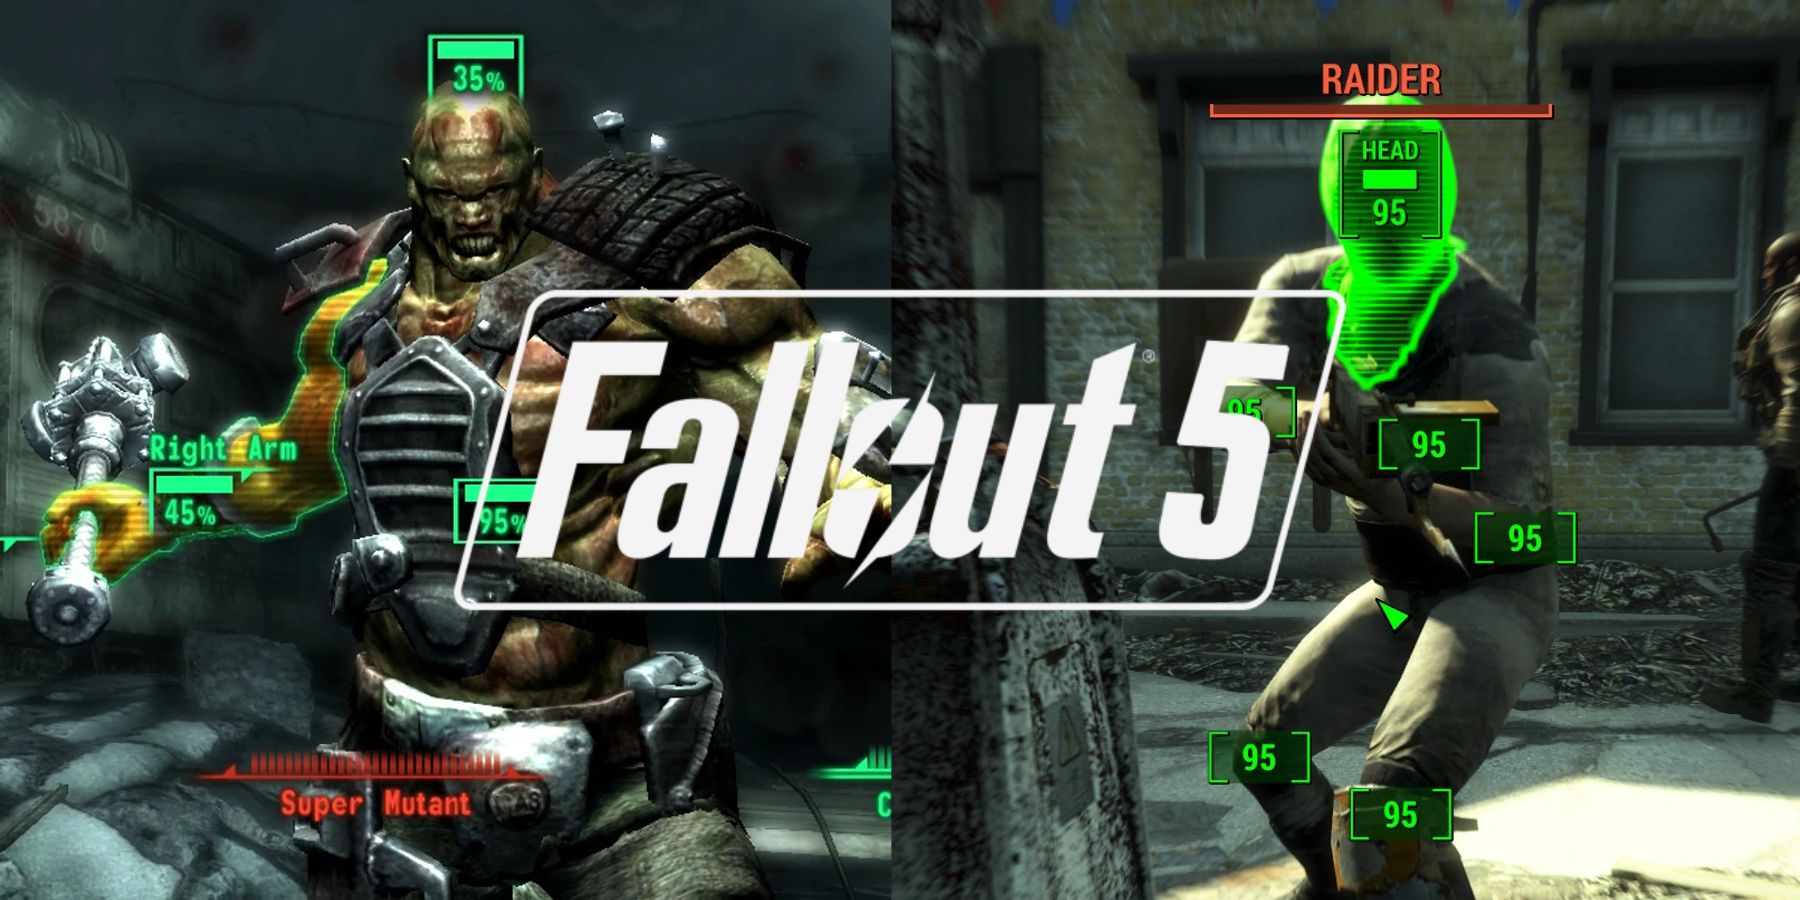 Fallout 3 4 VATS mechanic super mutant raider VATS mode